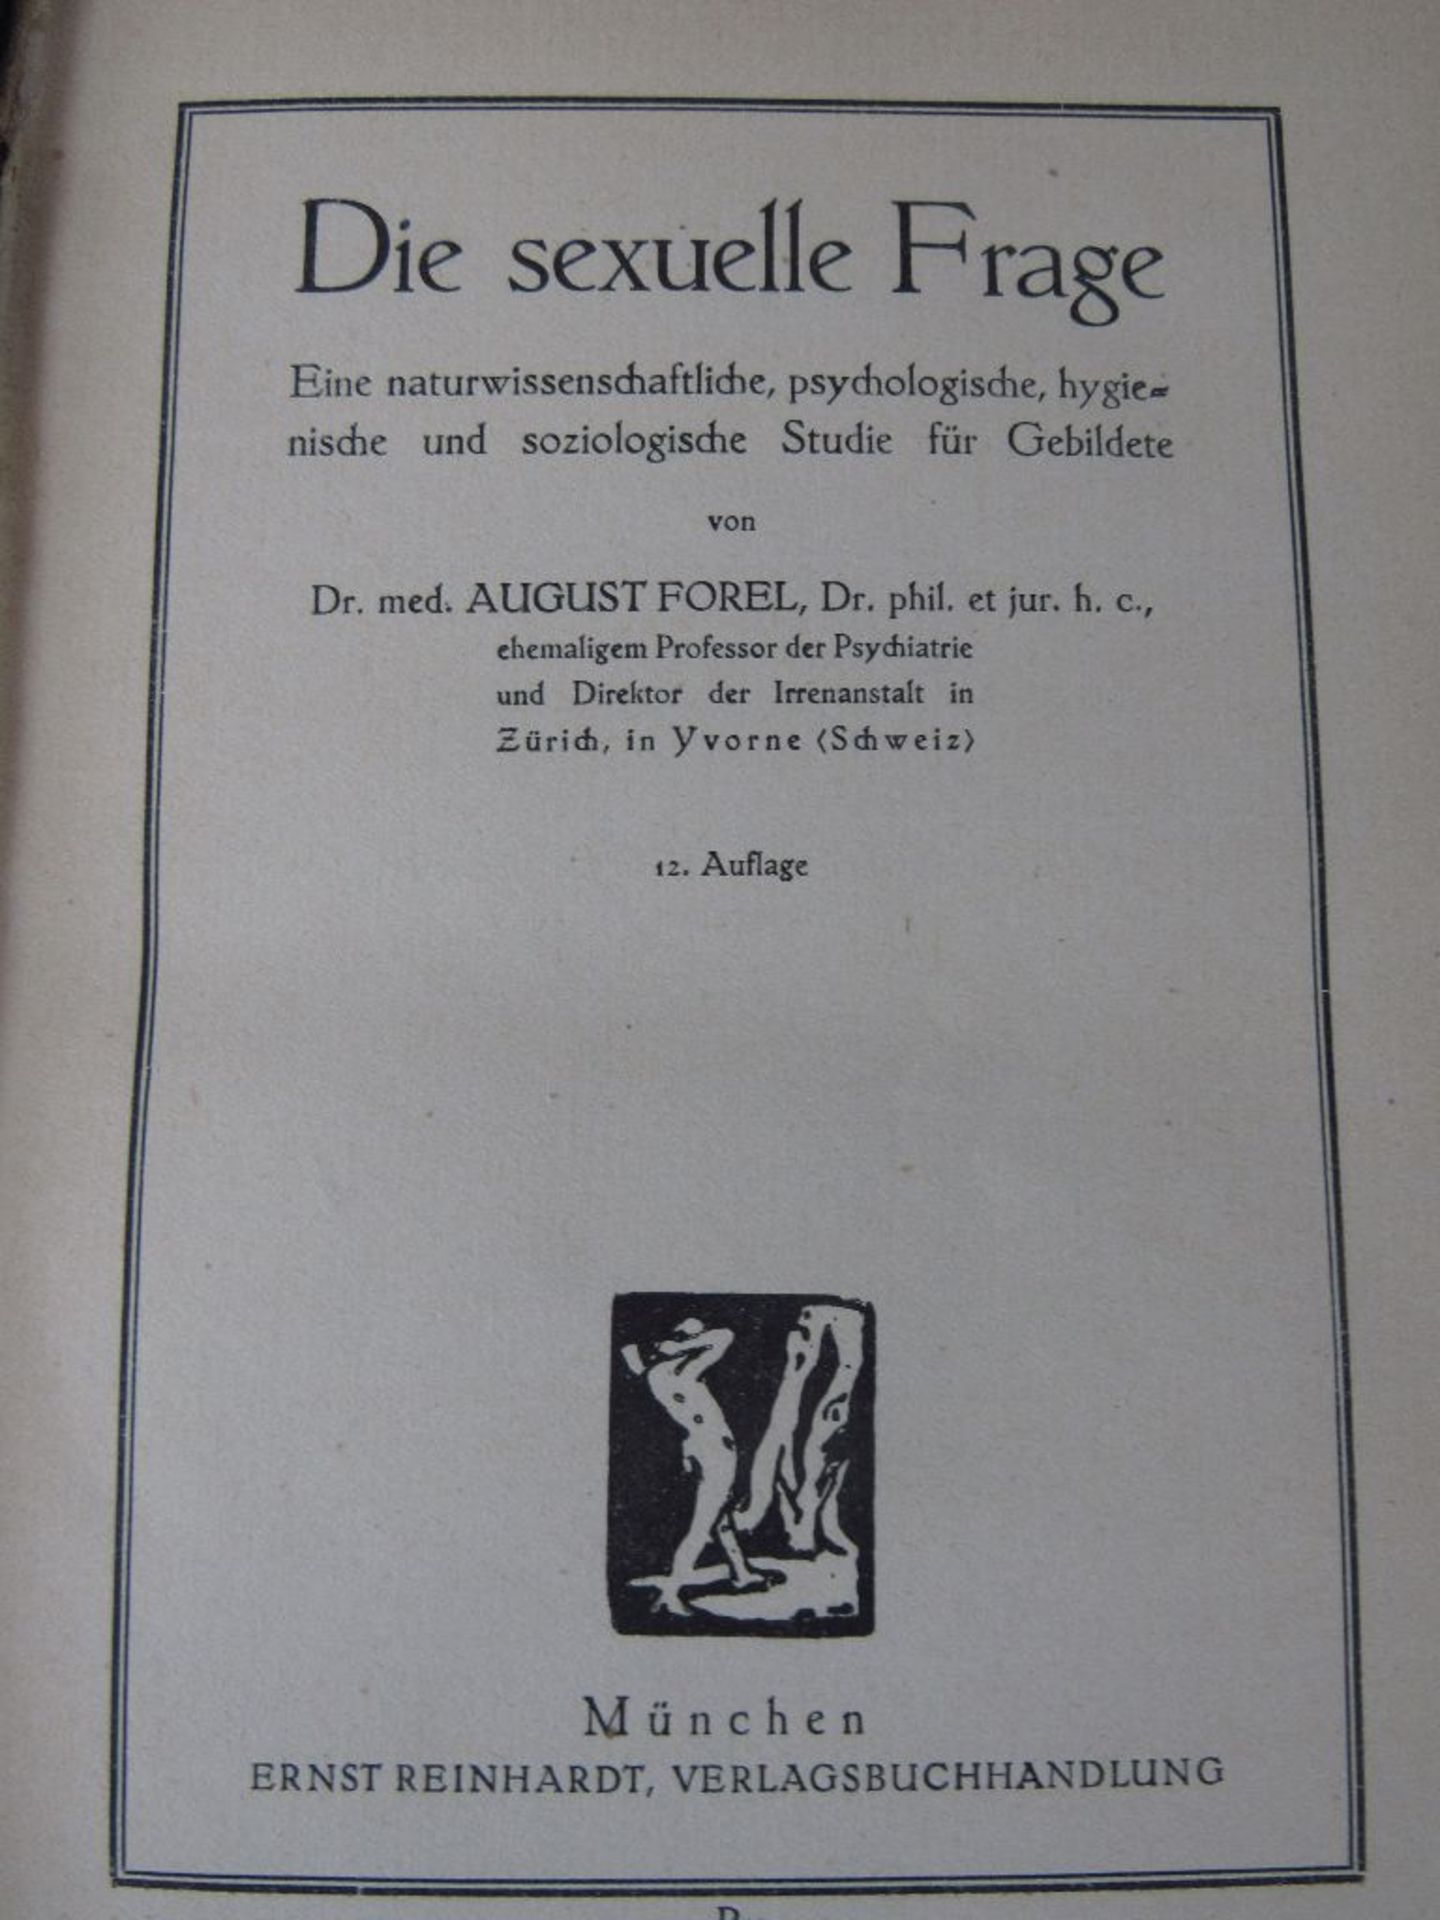 Buch " Die sexuelle Frage" von Prof. A. Forel 1904 sehr seltenes Thema in der Zeit mehr als 600 - Bild 3 aus 3